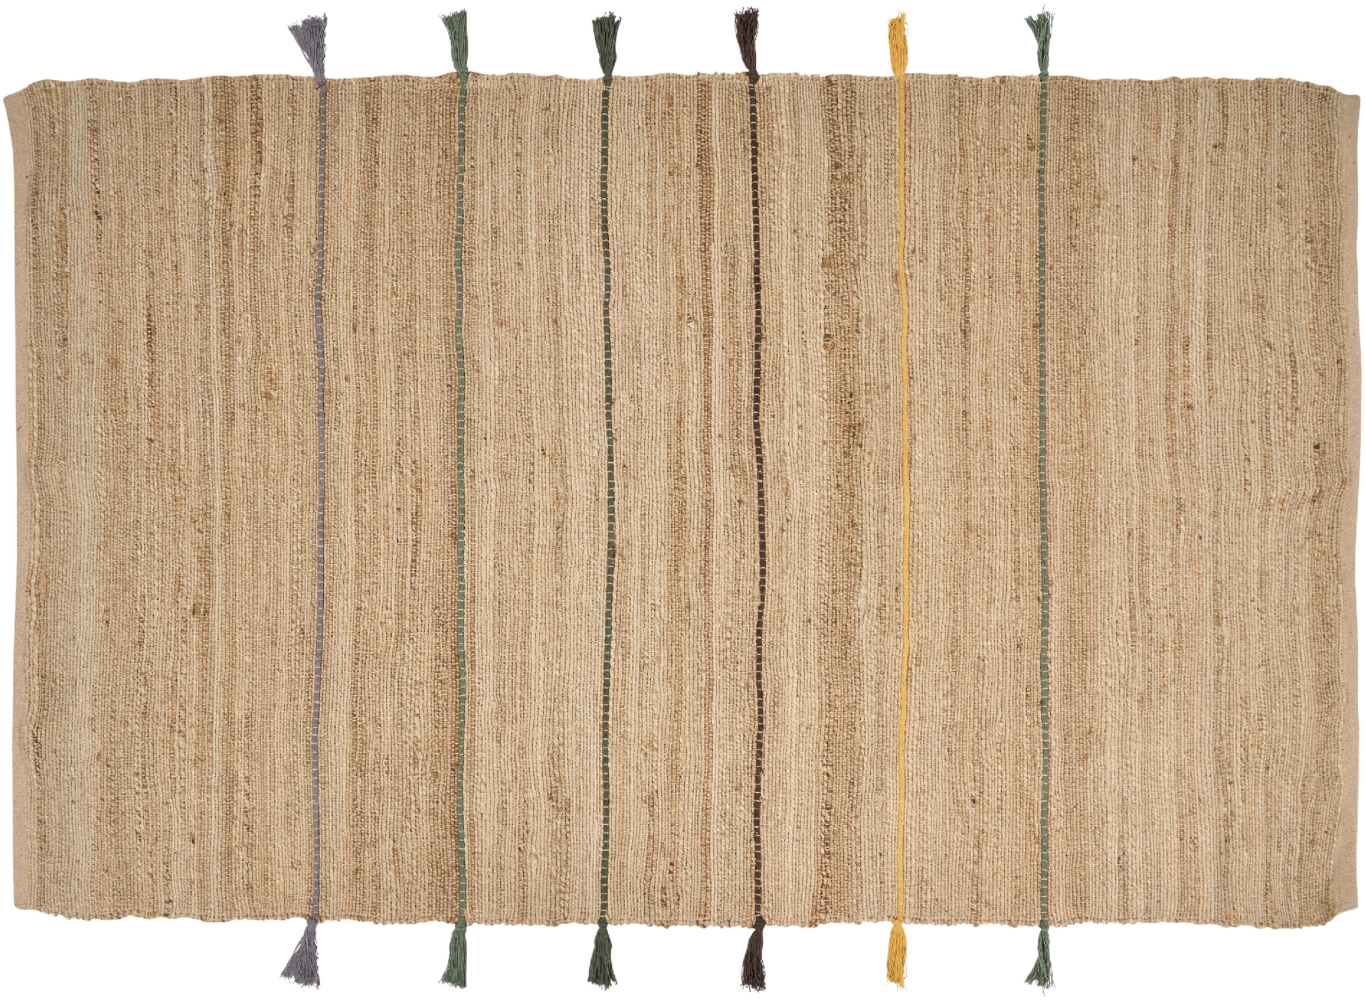 Teppich Jute beige mehrfarbig 140 x 200 cm mit Quasten Kurzflor RAUTA Bild 1